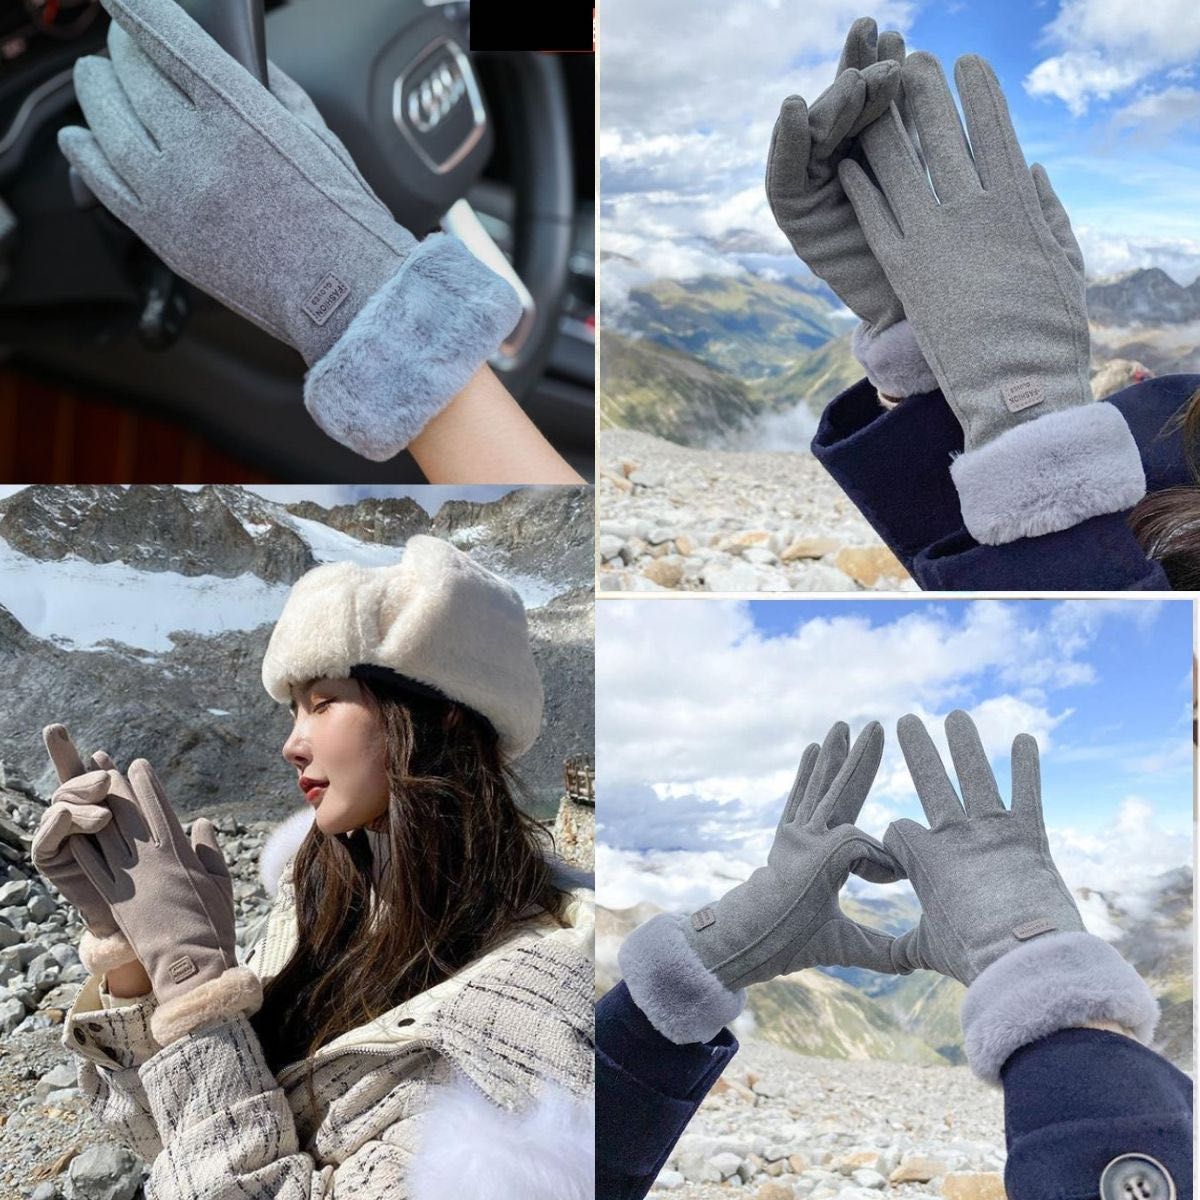 ファー付き手袋 レディース 暖かい スェード調手袋 タッチパネル 女性冬用手袋 アイボリー  裏起毛  防寒  グローブ  